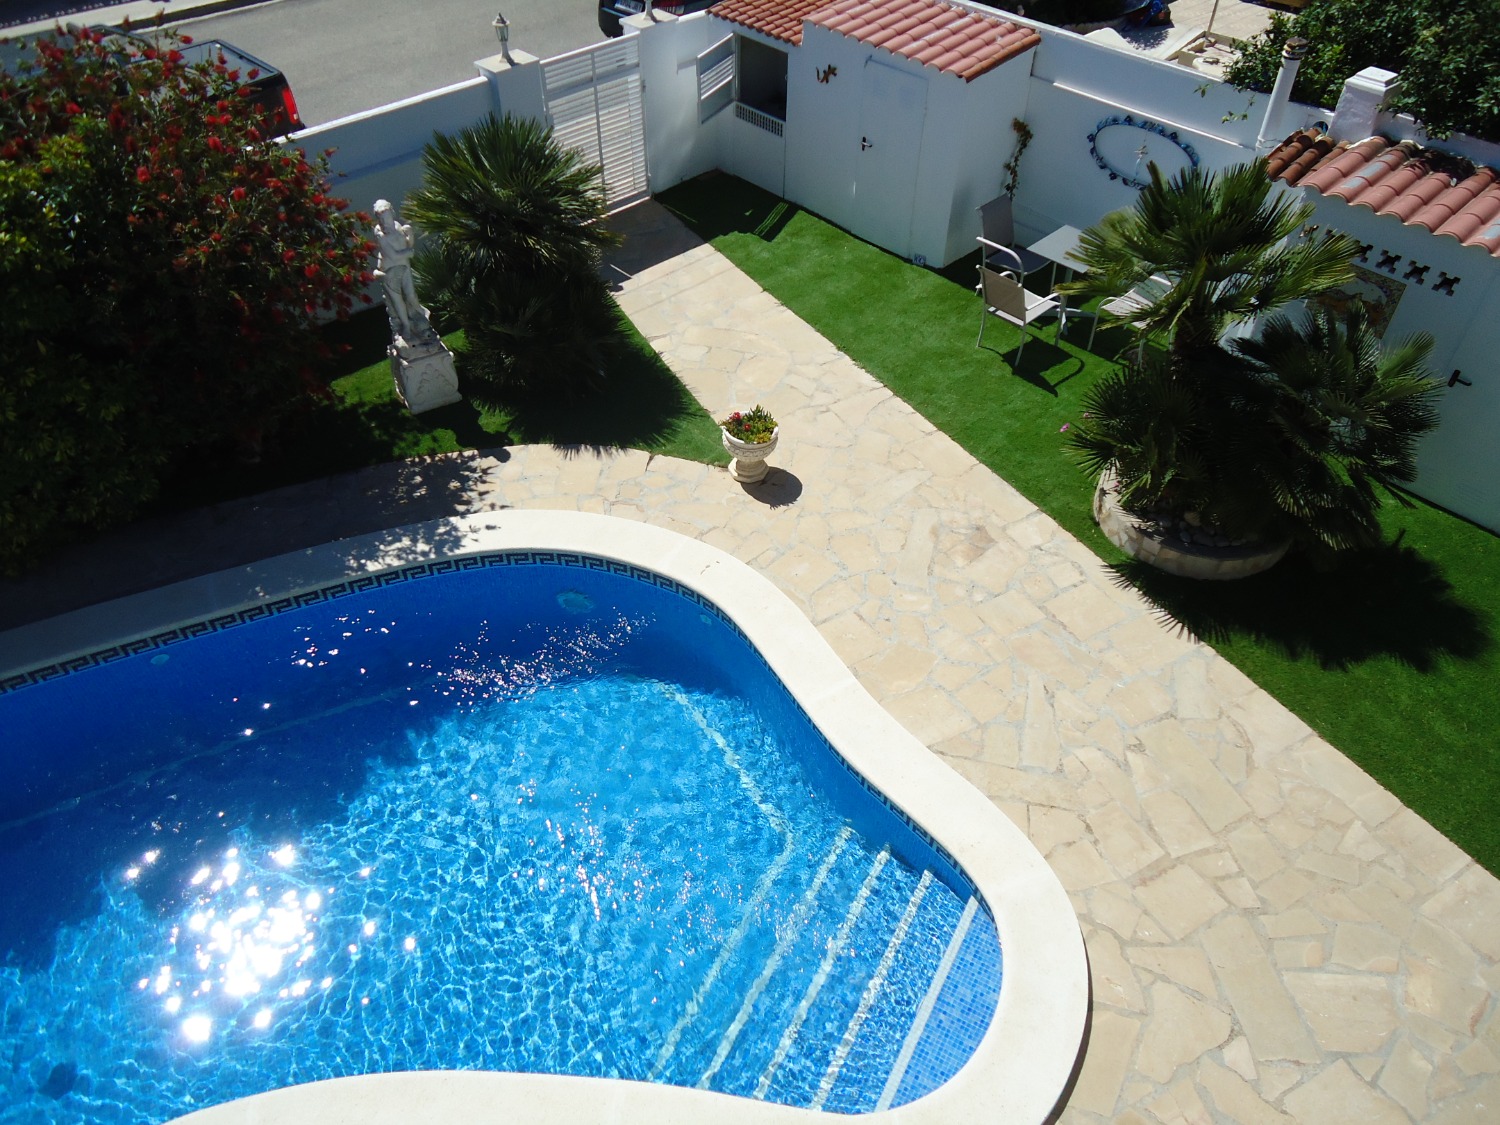 Charming villa with private pool in Miami Platja!